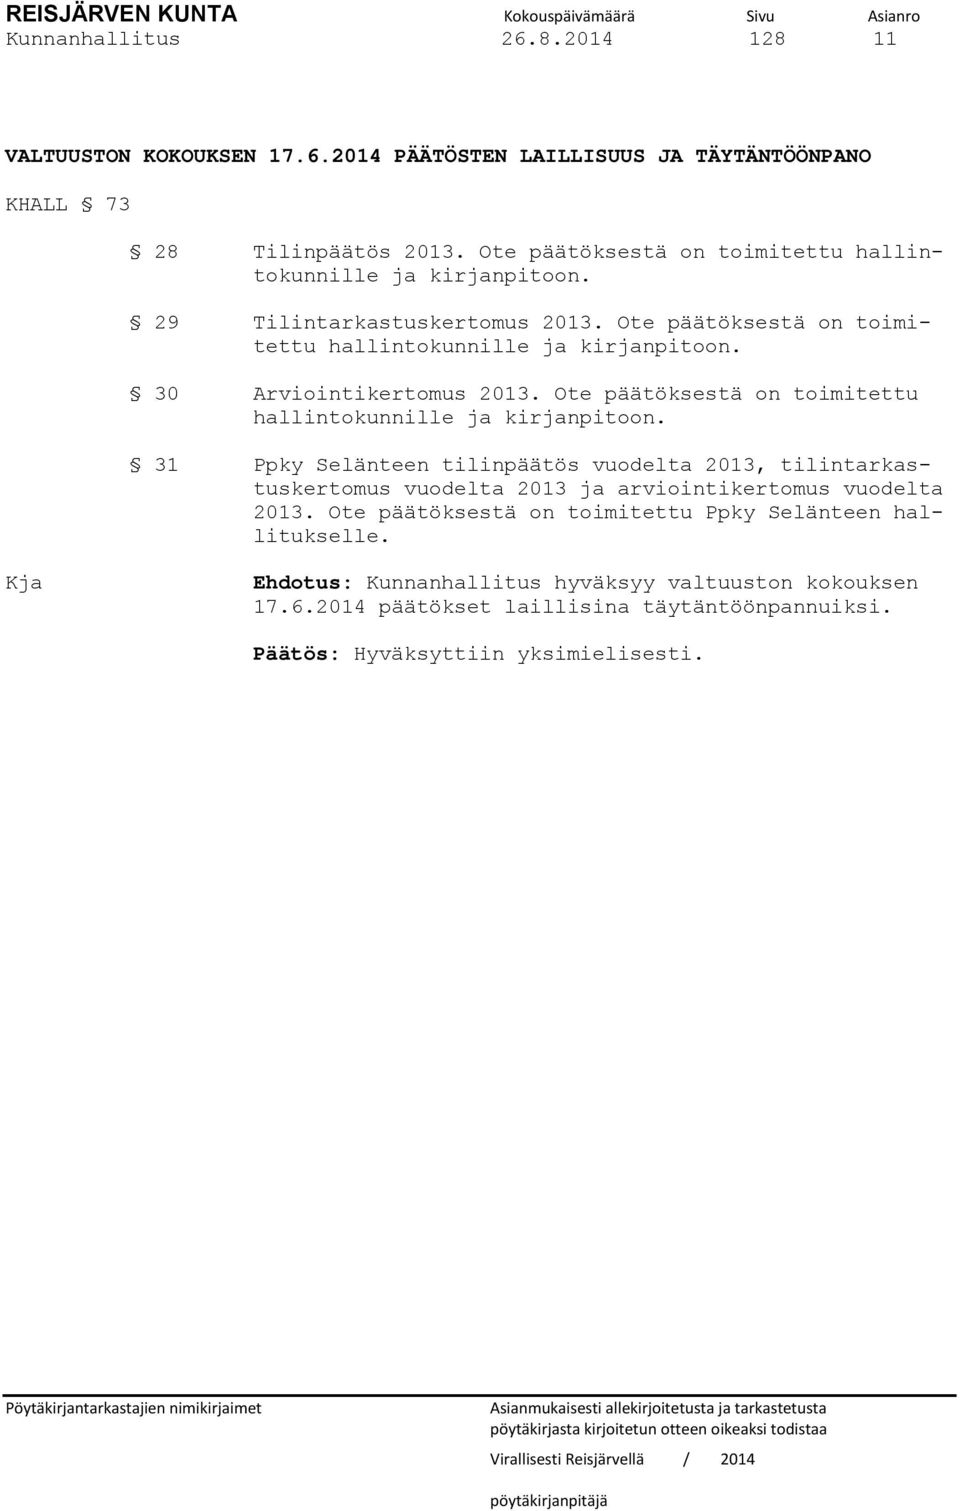 Ote päätöksestä on toimitettu hallintokunnille ja kirjanpitoon. 31 Ppky Selänteen tilinpäätös vuodelta 2013, tilintarkastuskertomus vuodelta 2013 ja arviointikertomus vuodelta 2013.